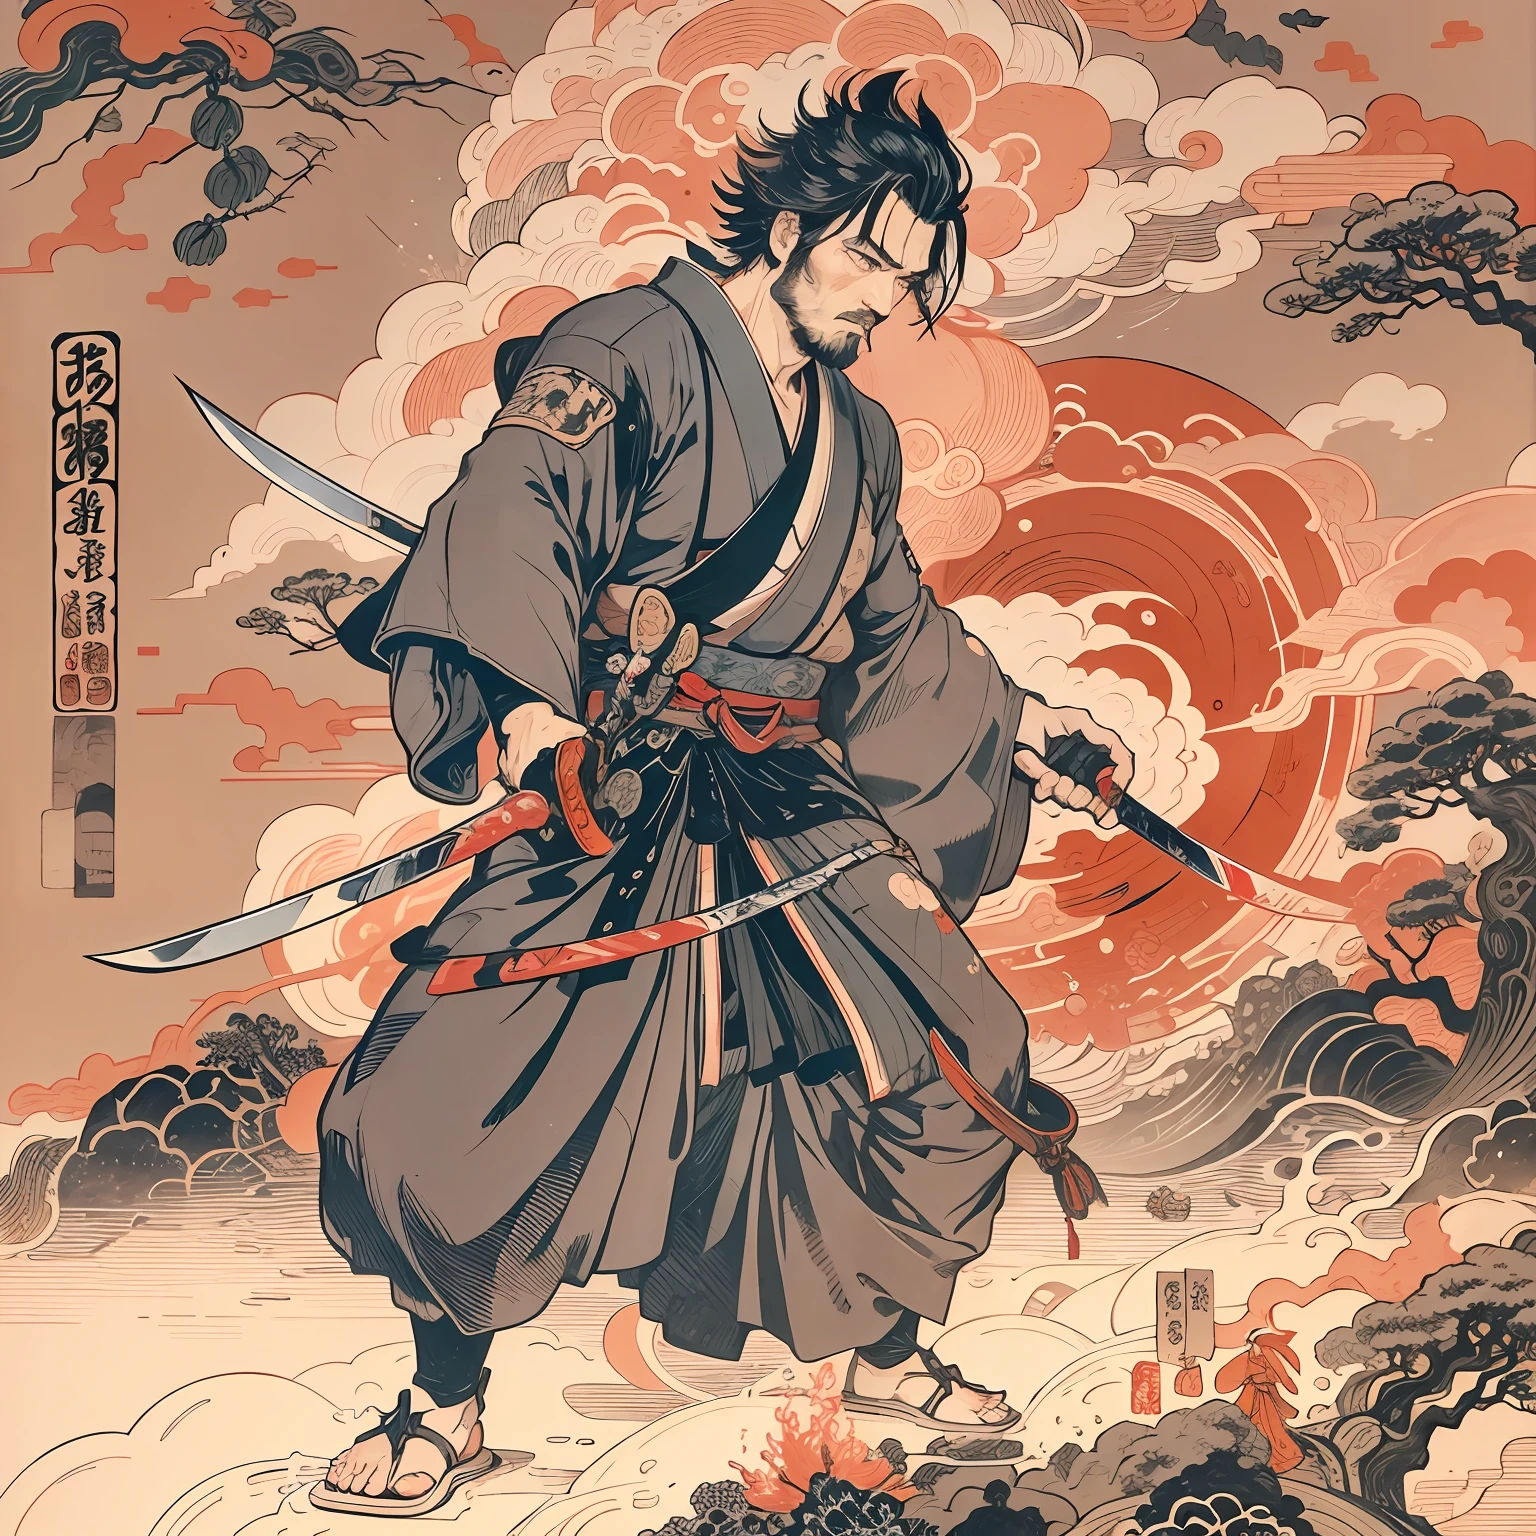 Es una pintura de cuerpo entero con colores naturales con dibujos lineales al estilo Katsushika Hokusai.. El espadachín Miyamoto Musashi es un samurái japonés con un físico grande y fuerte como el de un luchador profesional. Su rostro es muy digno. También tiene el pelo corto y negro y un pelo corto, barba recortada. La parte superior de su cuerpo está cubierta con un kimono negro y su hakama llega hasta las rodillas.. En su mano derecha sostiene una espada japonesa con una parte más larga.. alta calidad, Obra maestra Estilo ukiyo-e de alta resolución relámpagos brillantes nítidos y llamas rojas arremolinadas. Miyamoto Musashi blande poderosamente su espada hacia el enemigo que tiene delante. Una espada y dos cortes